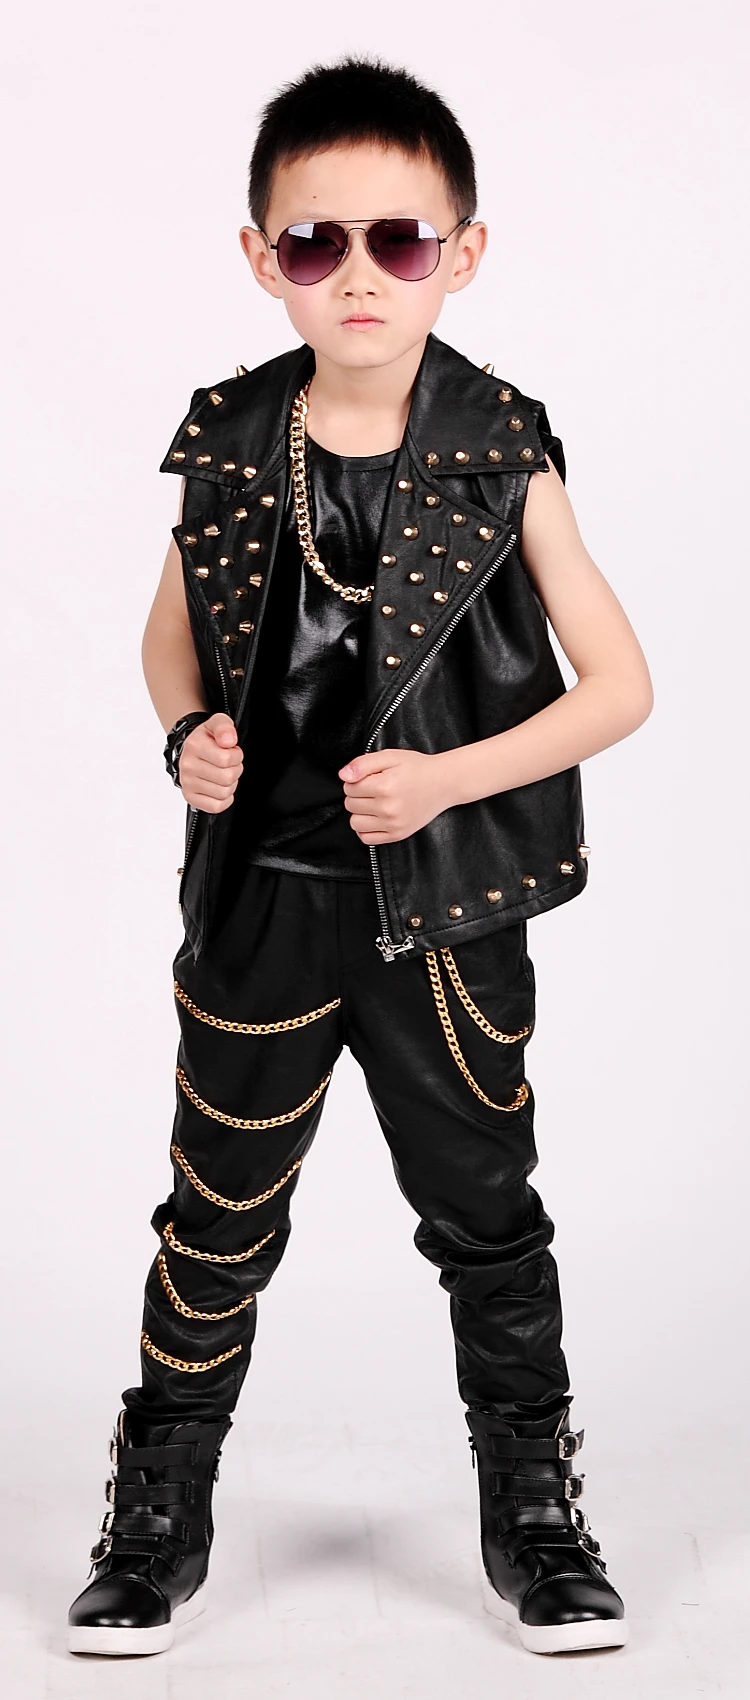 Модная одежда для детей, Детская мода мальчиков жилет локомотивная кожаная куртка жилет с заклепками Производительность одежда Modis детей танцевальный сценический костюм Y1230